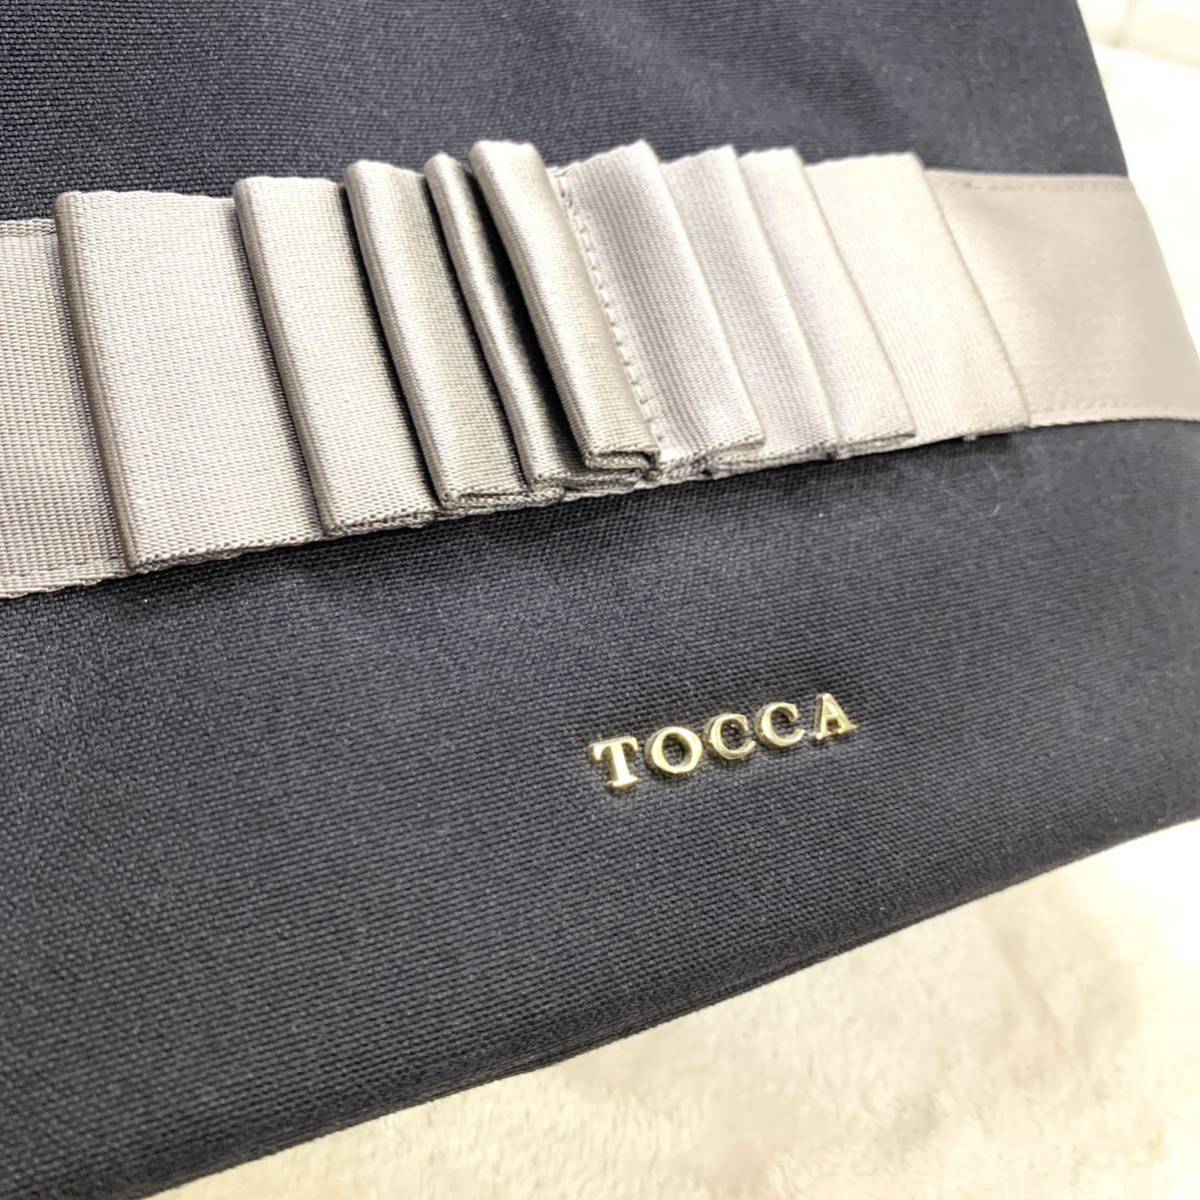  превосходный товар TOCCA Tocca парусина 2way ручная сумочка плечо 